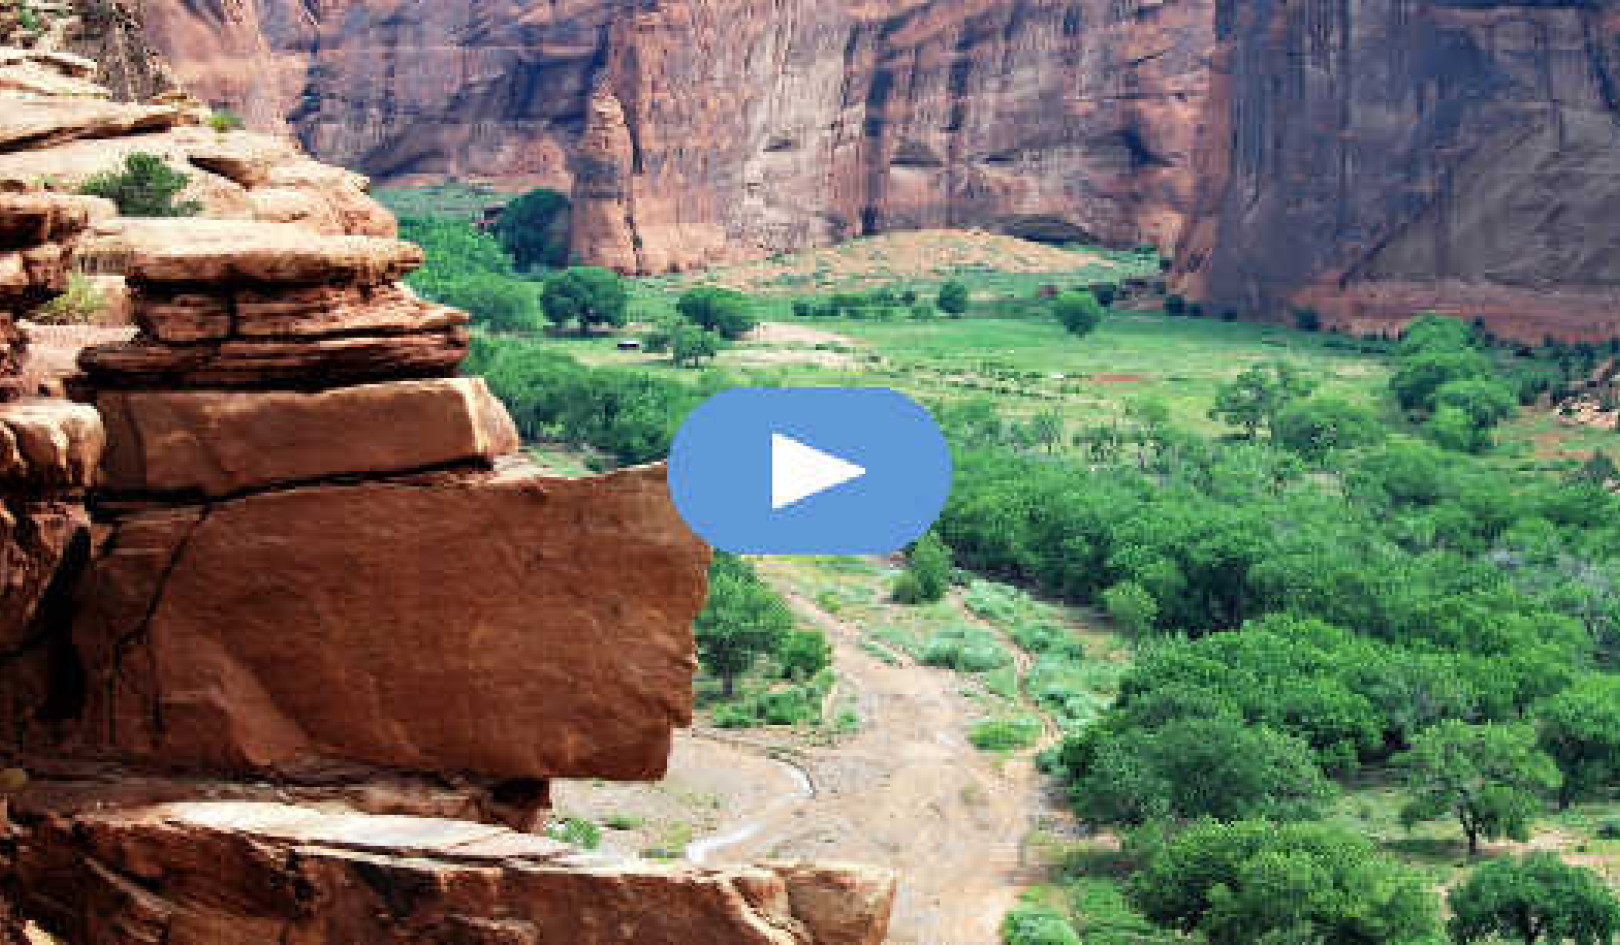 Experiența mea cu leul de munte în Canyon de Chelly: Ghidul de coșmar sau spirit? (Video)